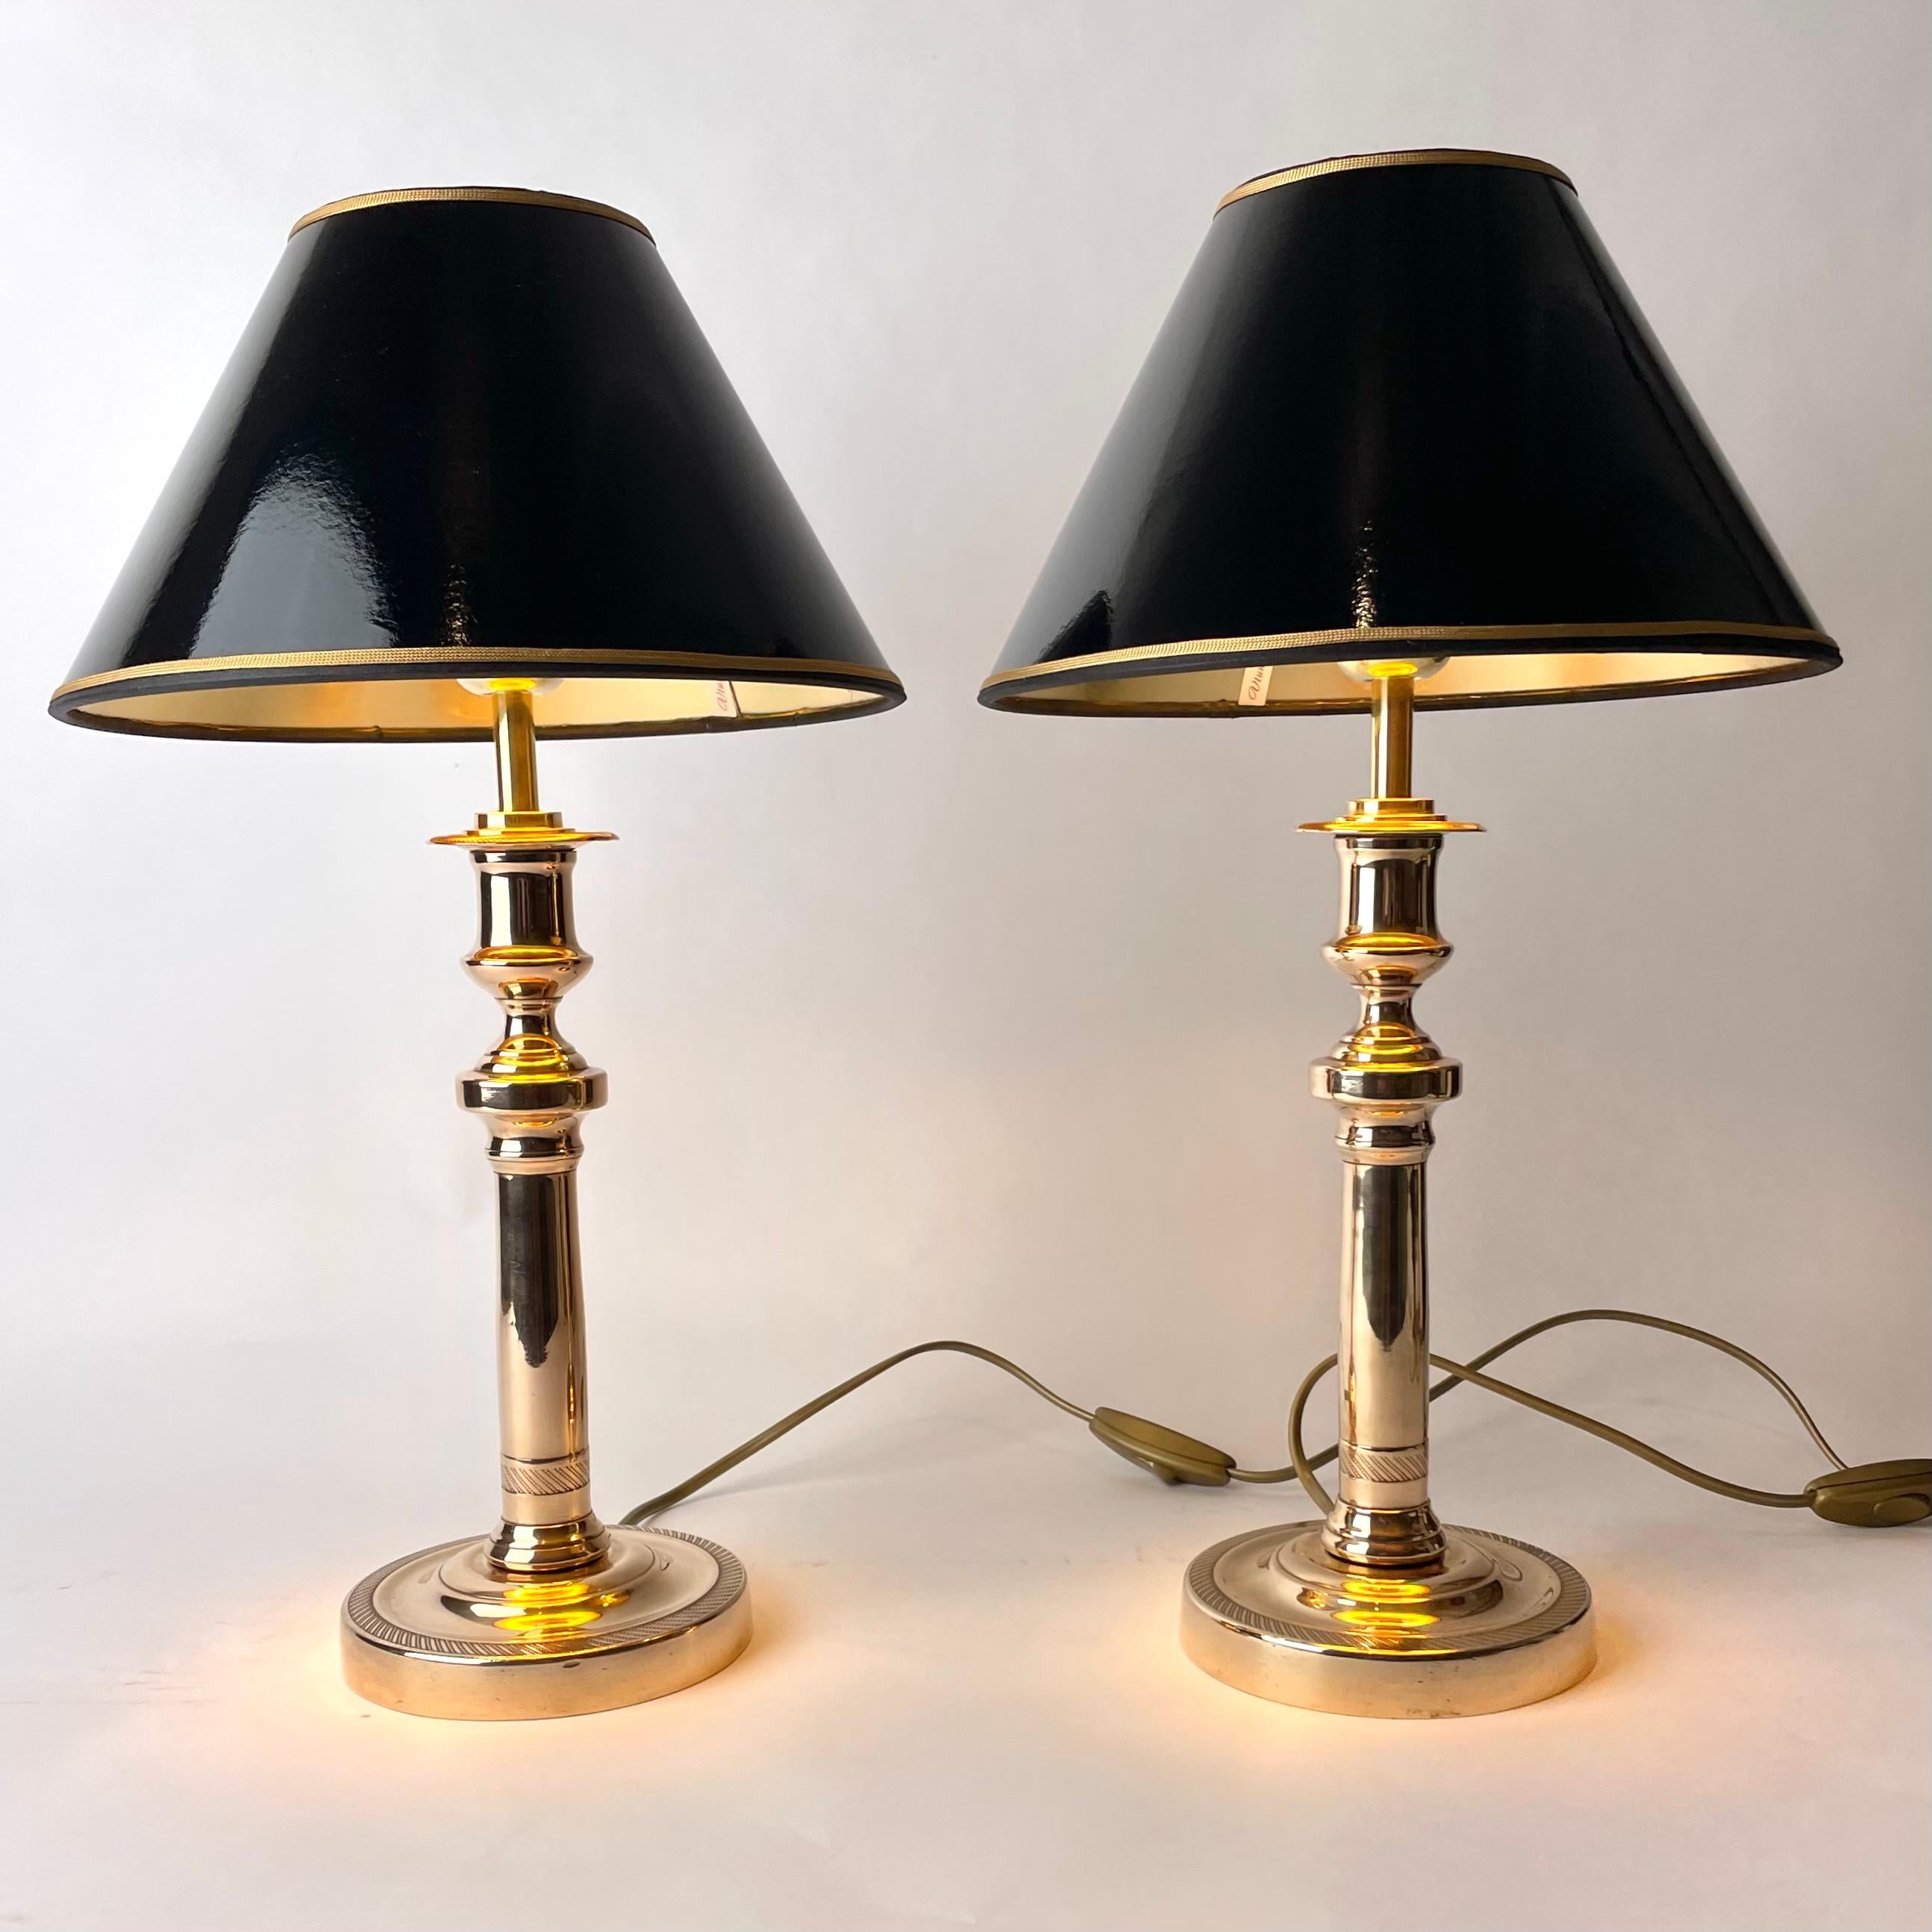 Belle paire de lampes de table Empire en bronze. Il s'agissait à l'origine d'une paire de chandeliers Empire des années 1820, transformés en lampes de table au début du 20e siècle.

Électricité refaite à neuf 

Nouveaux abat-jour en laque noire avec